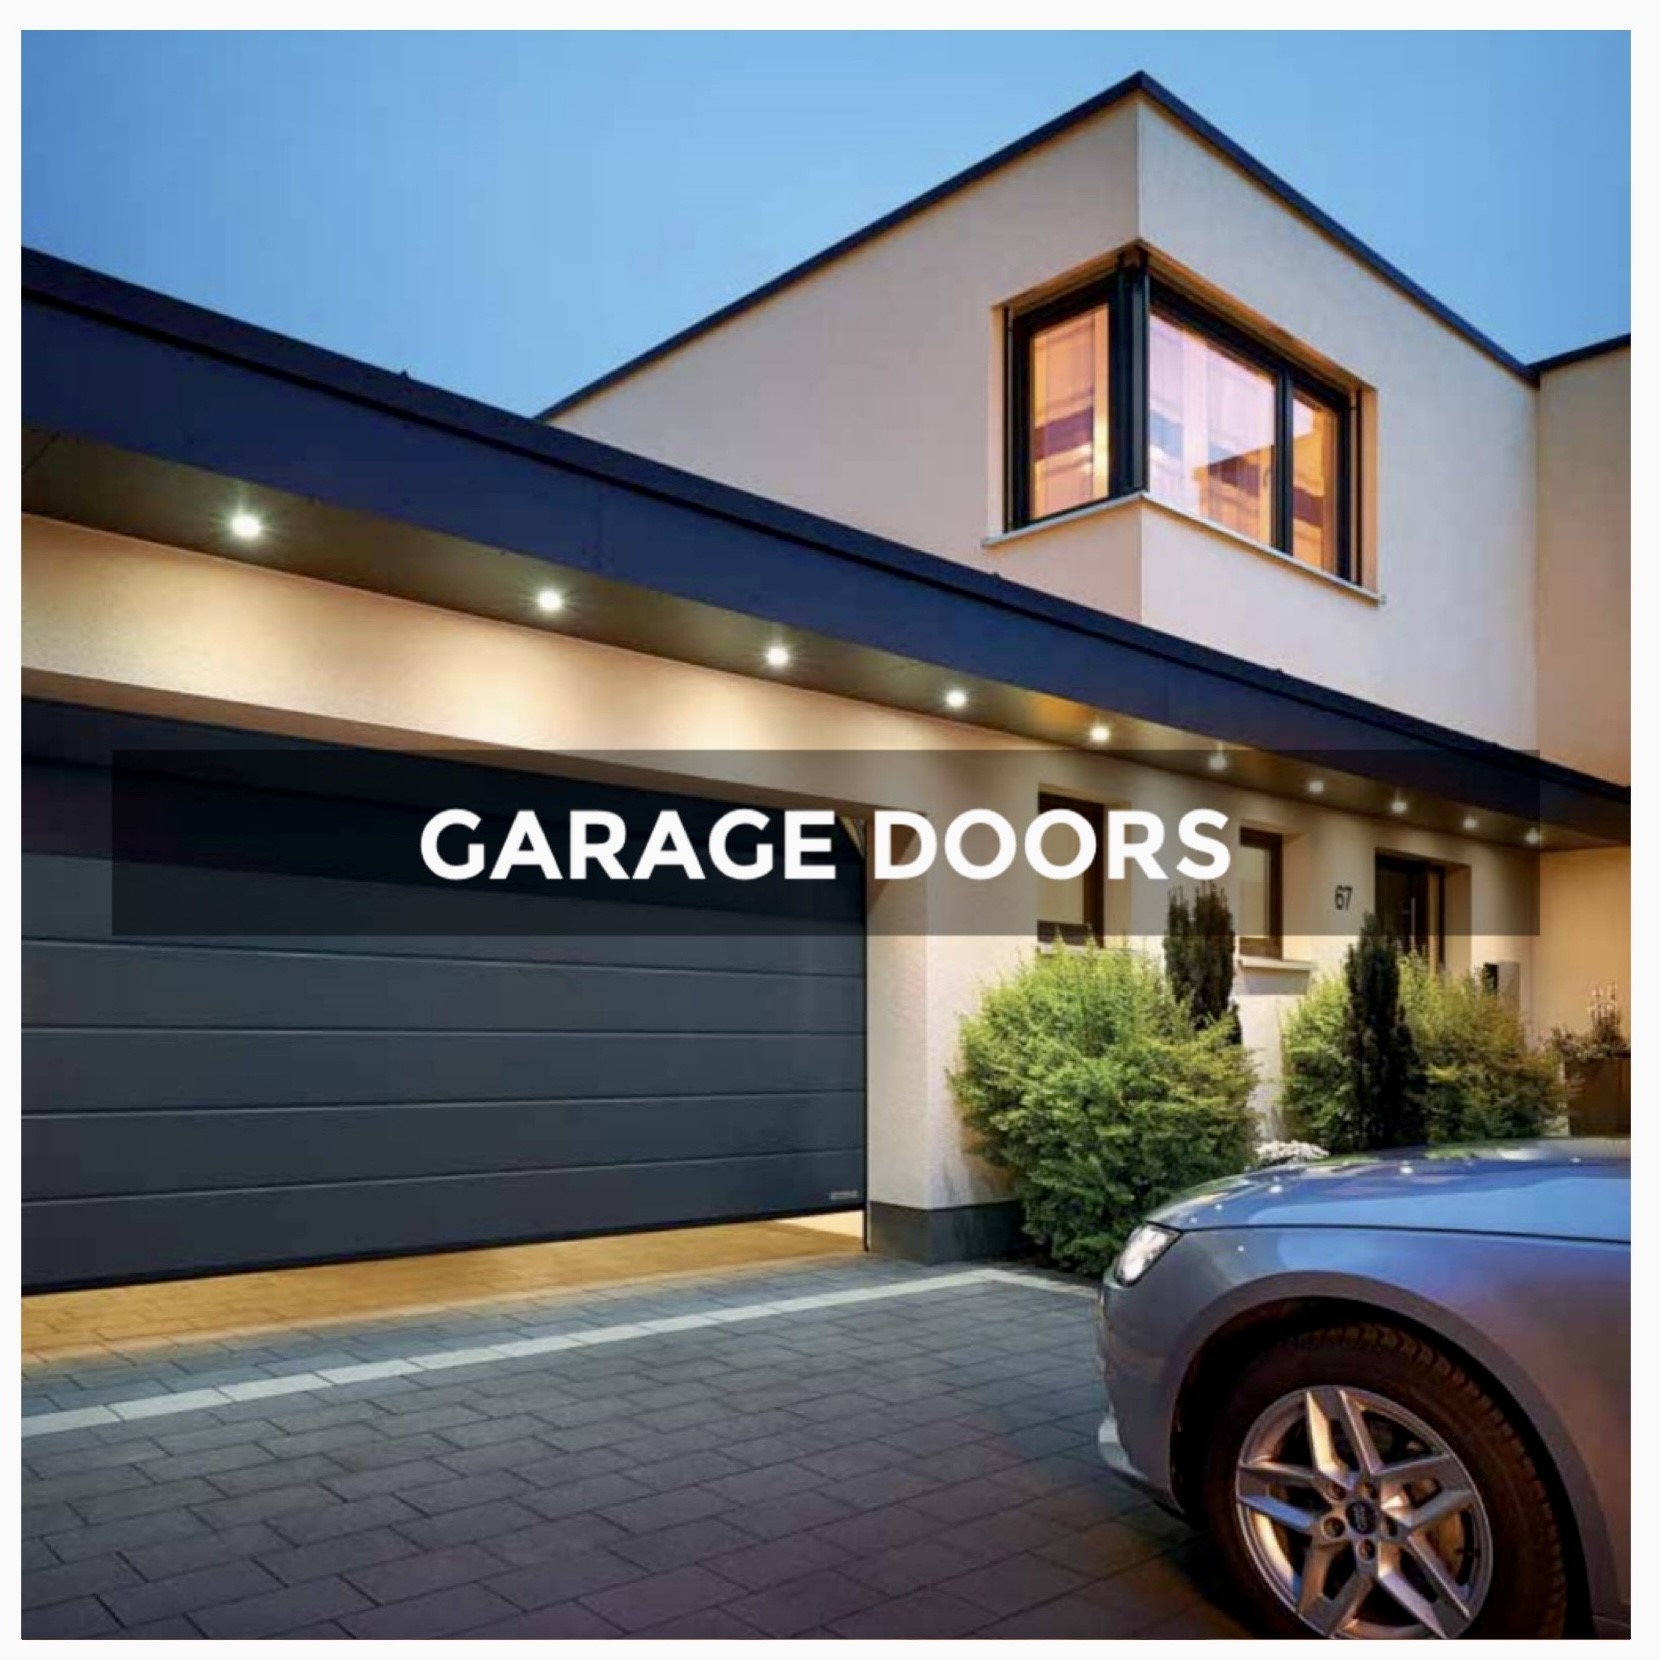 Our Garage Door Range